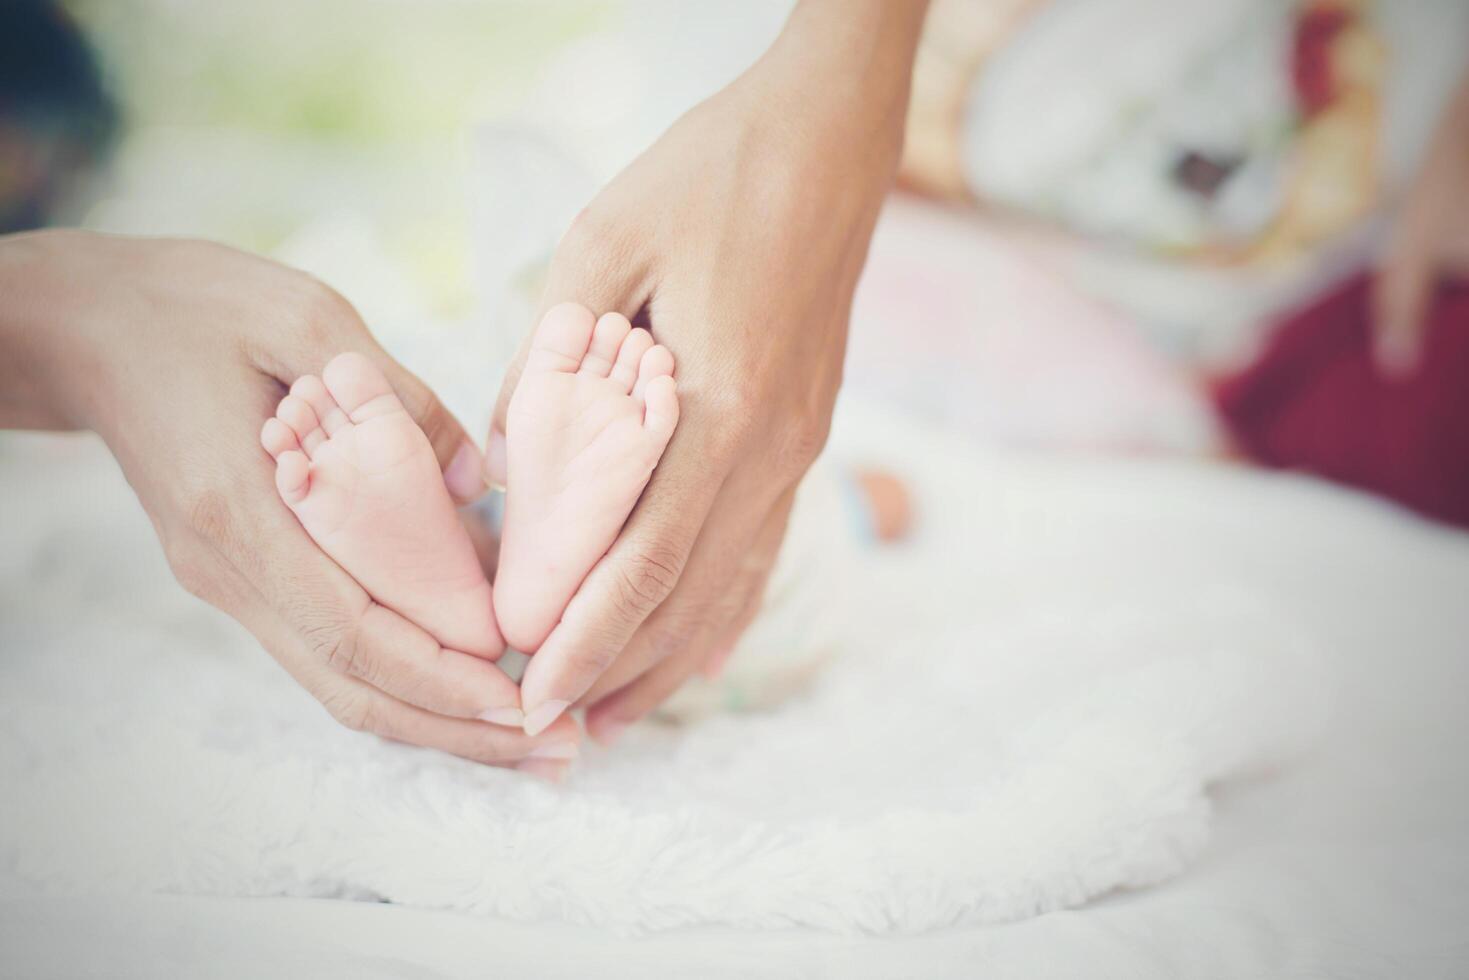 pies de bebé Newbron en manos de la madre. foto